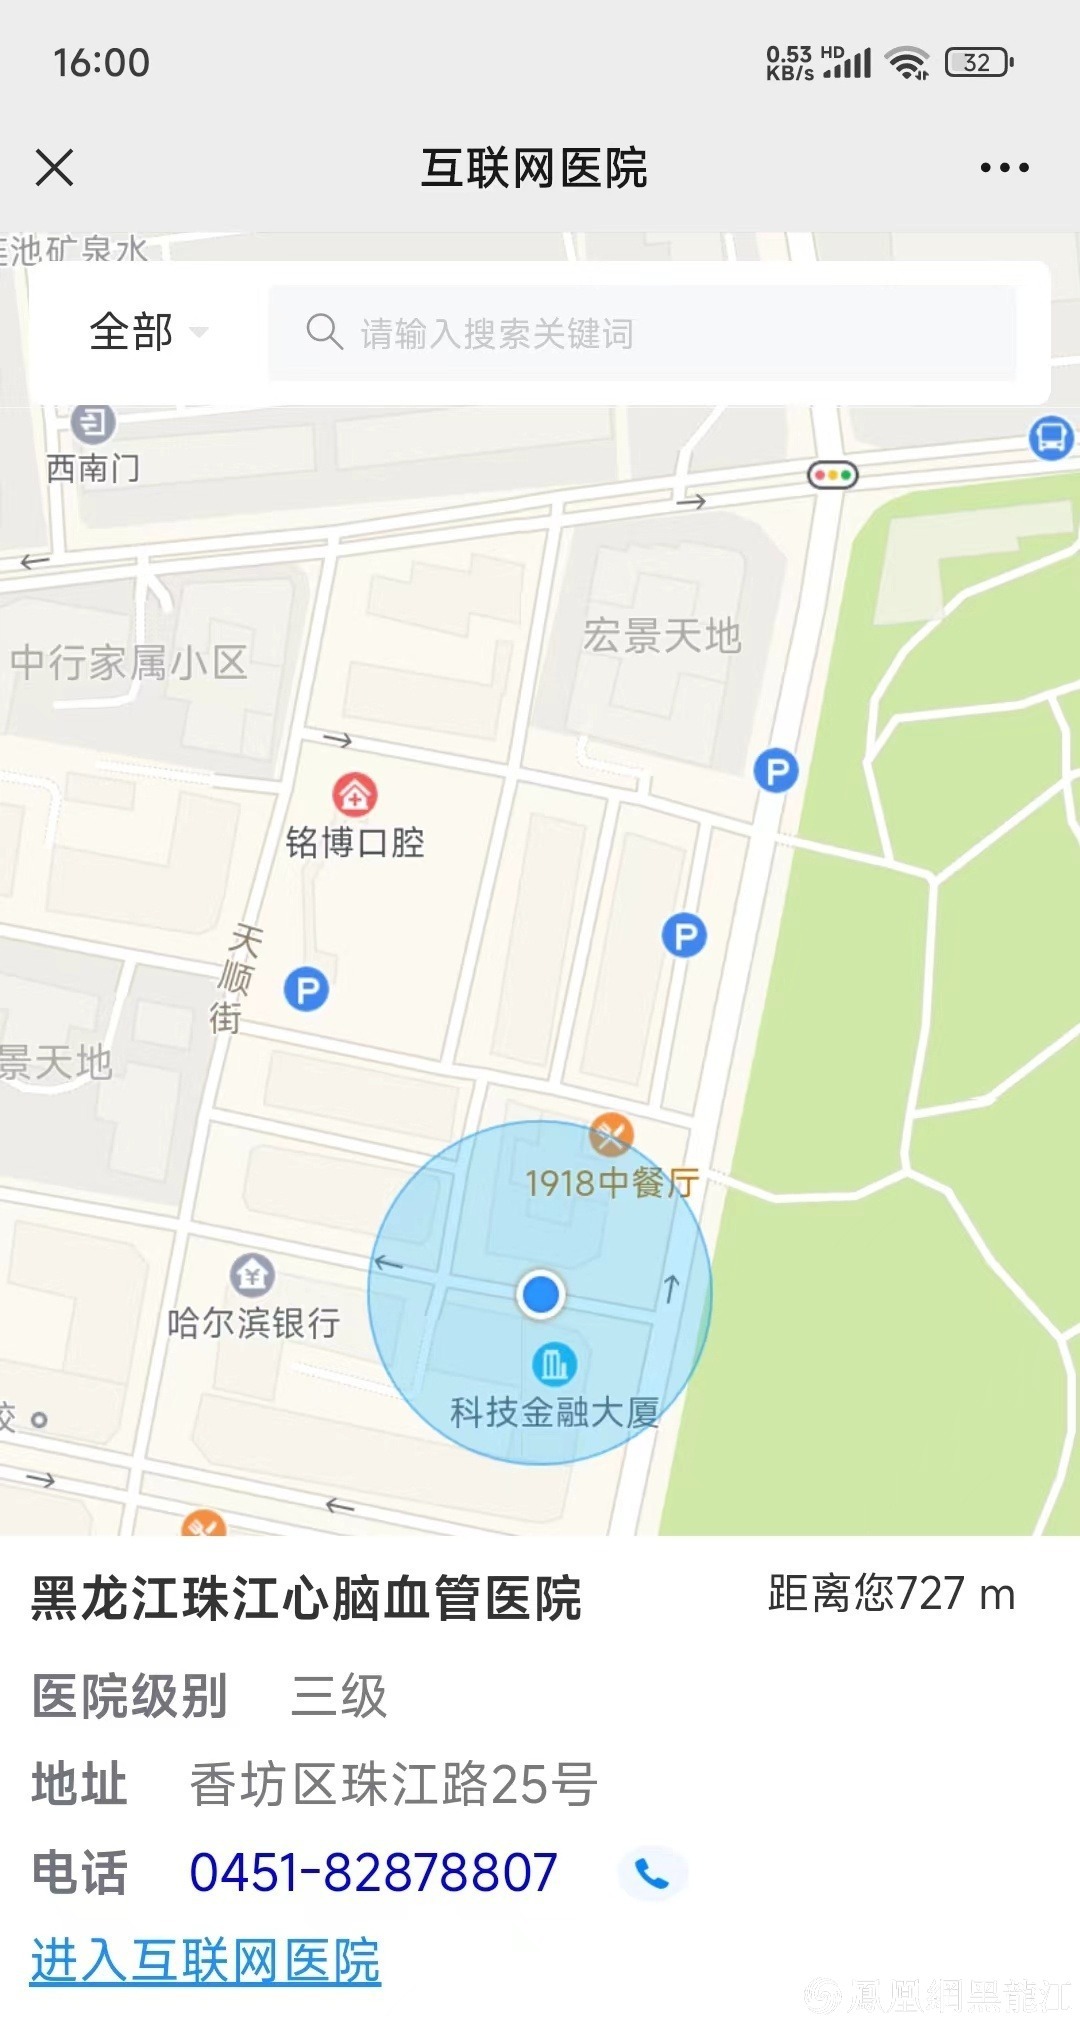 全国首创 | 哈尔滨市卫生健康便民地图上线 解决群众急难愁盼